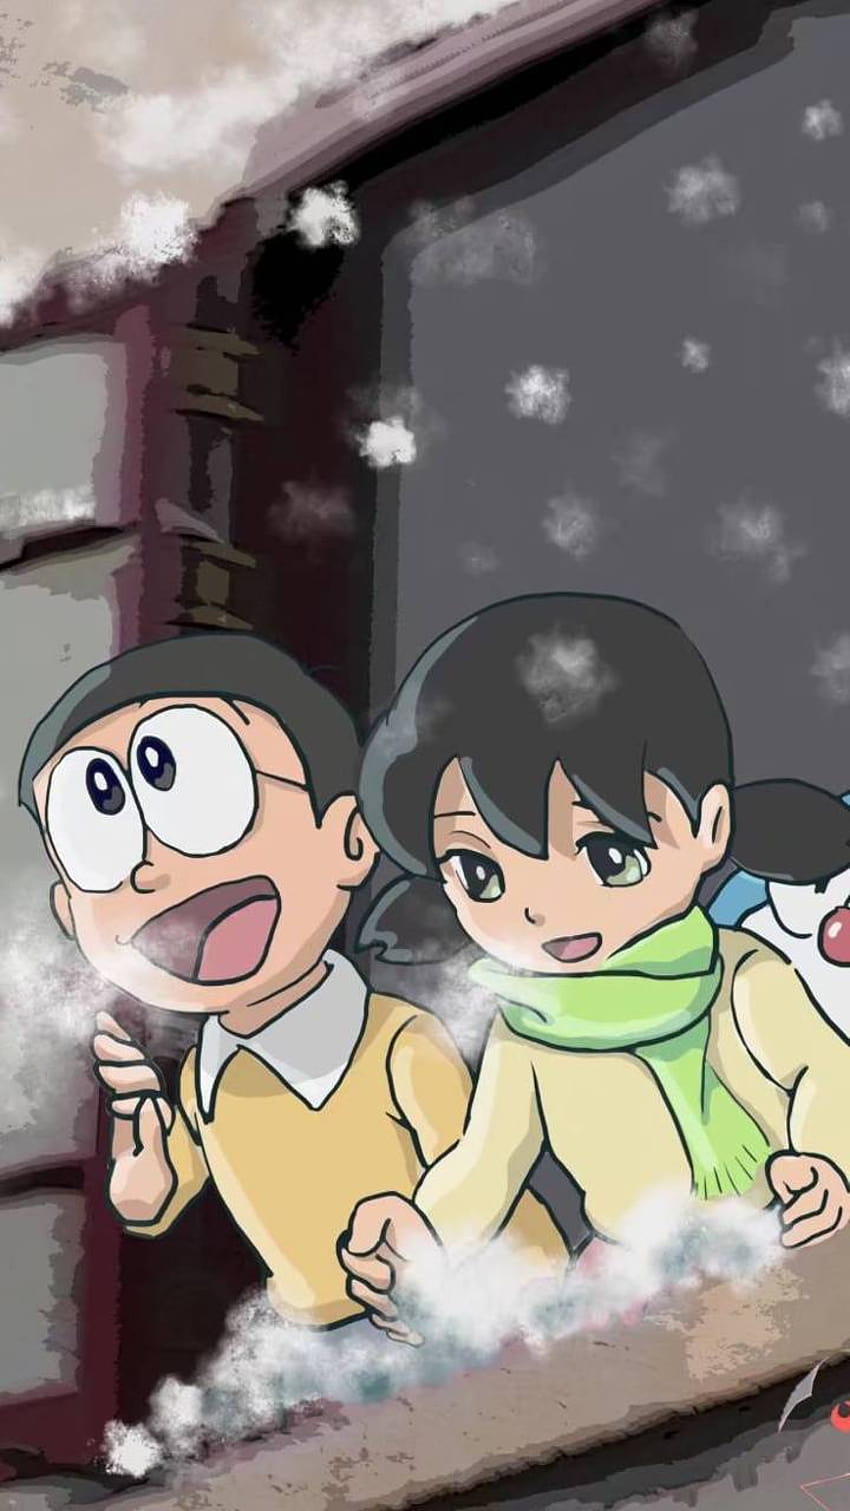 Nobita love trong live action: Với bộ phim chuyển thể live action của Doraemon, Nobita love trở nên cực kì hấp dẫn và lãng mạn hơn bao giờ hết! Khám phá mối tình giữa Nobita và Shizuka như chưa từng thấy, cùng với các diễn viên trẻ tài năng và một bối cảnh đầy màu sắc và sống động! Cảm nhận niềm đam mê và tình yêu sâu đậm của Nobita trong live action mới này!